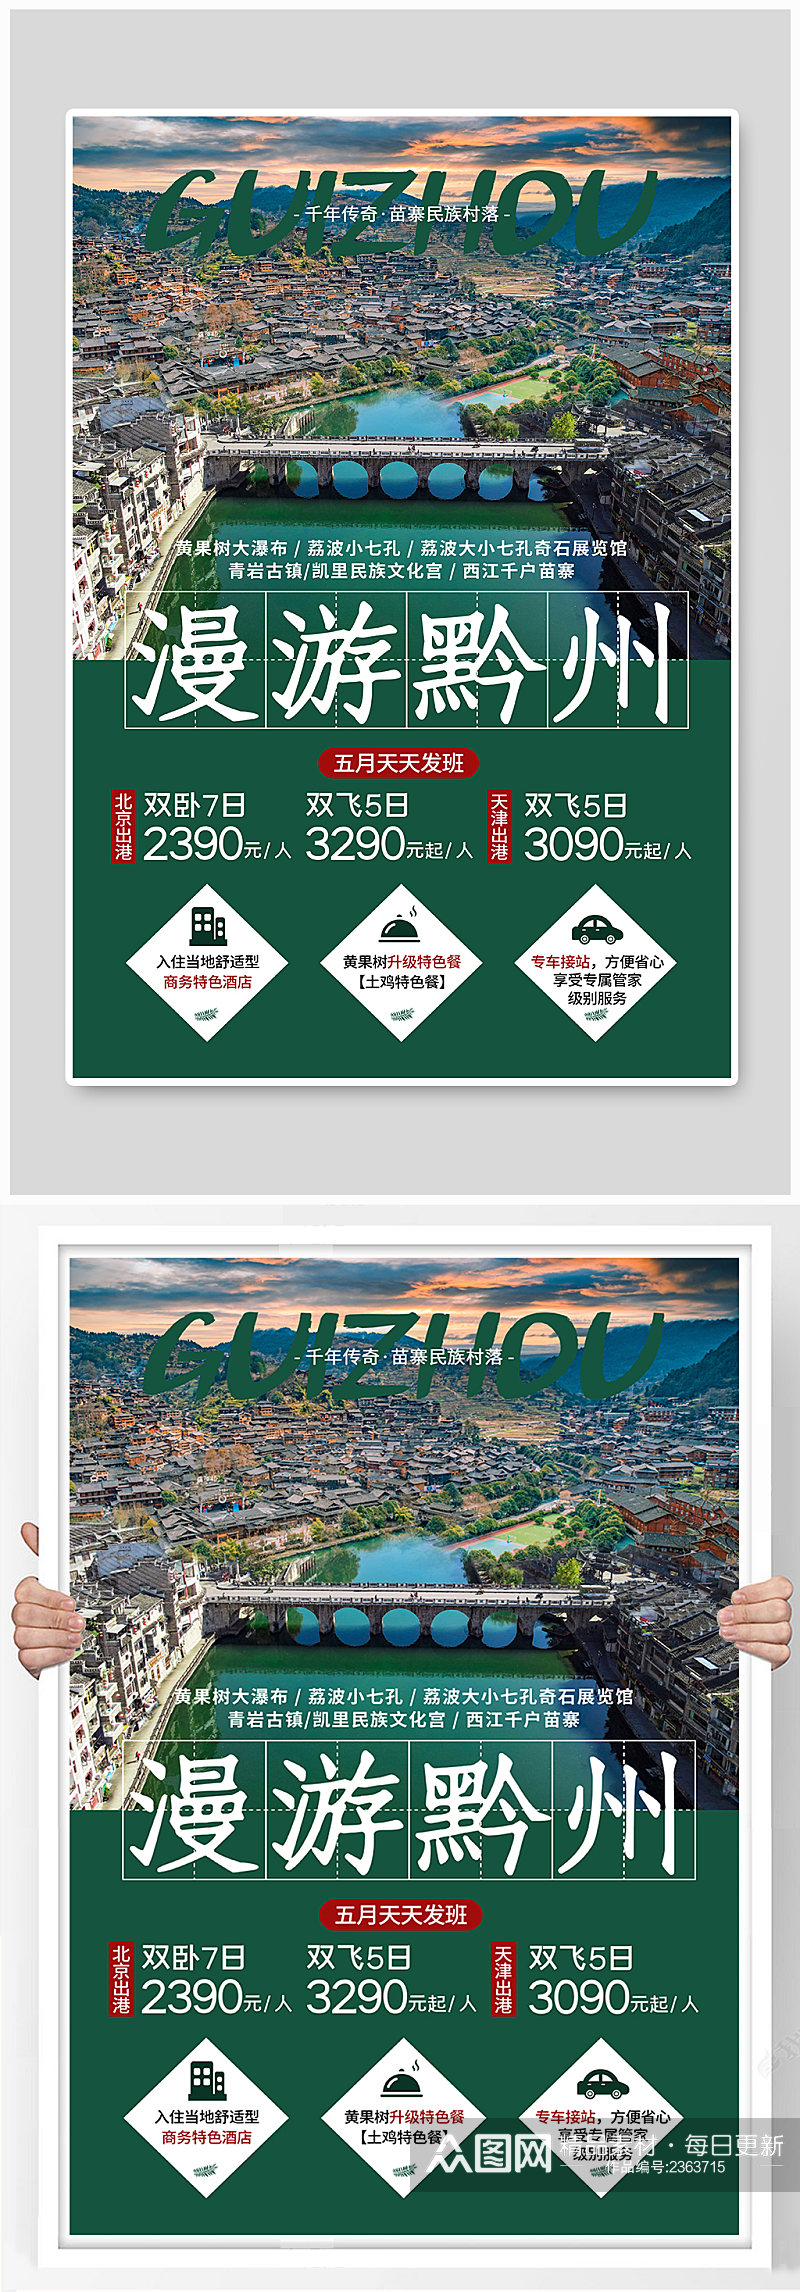 贵州旅游绿色简约海报素材